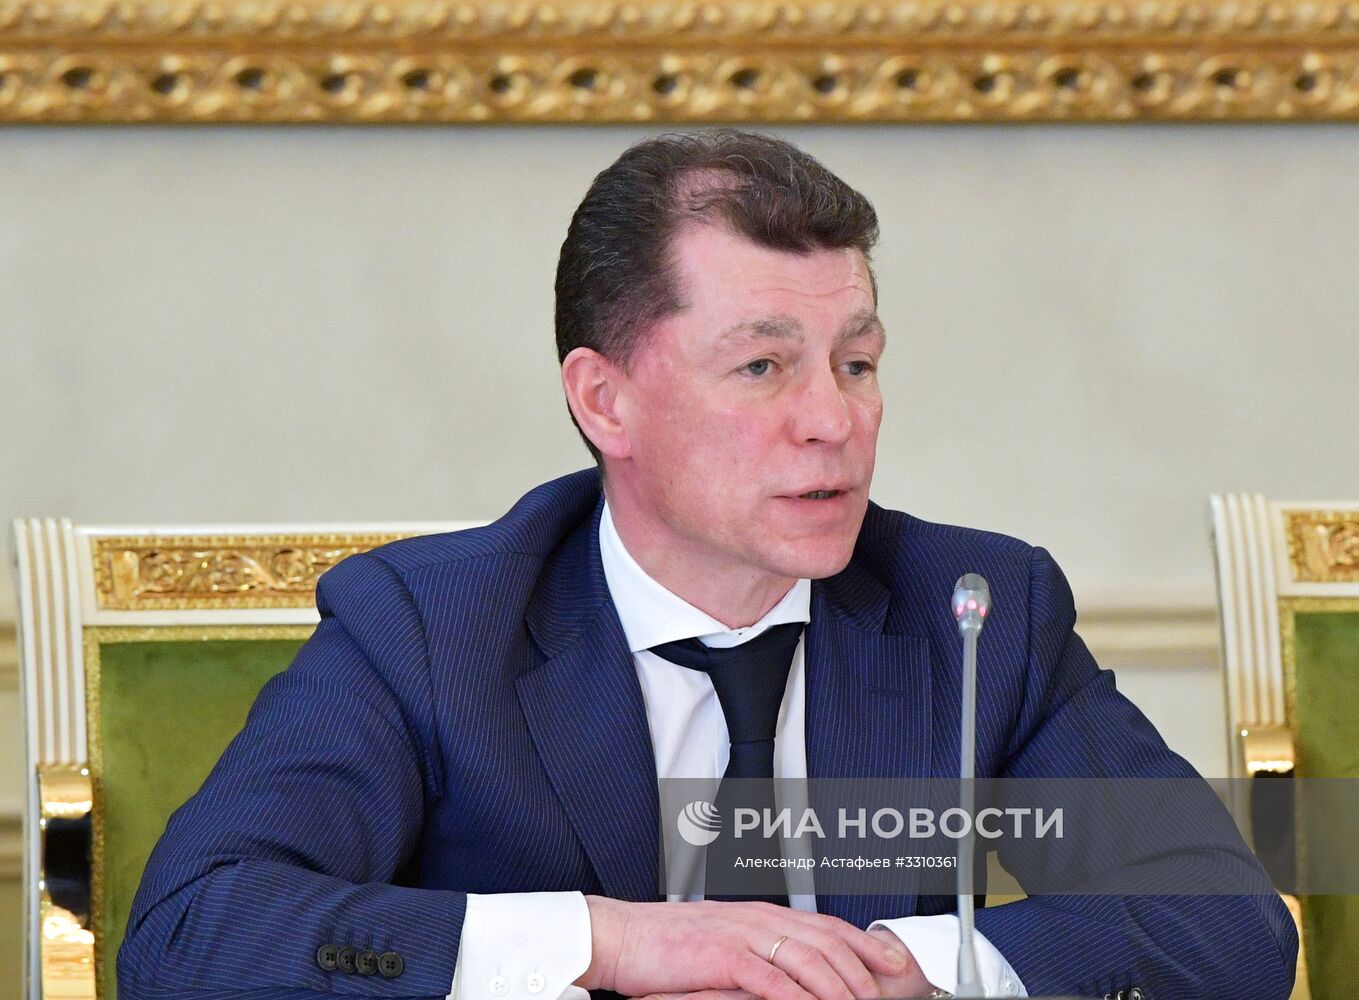 Рабочая поездка премьер-министра РФ Д. Медведева в Грозный